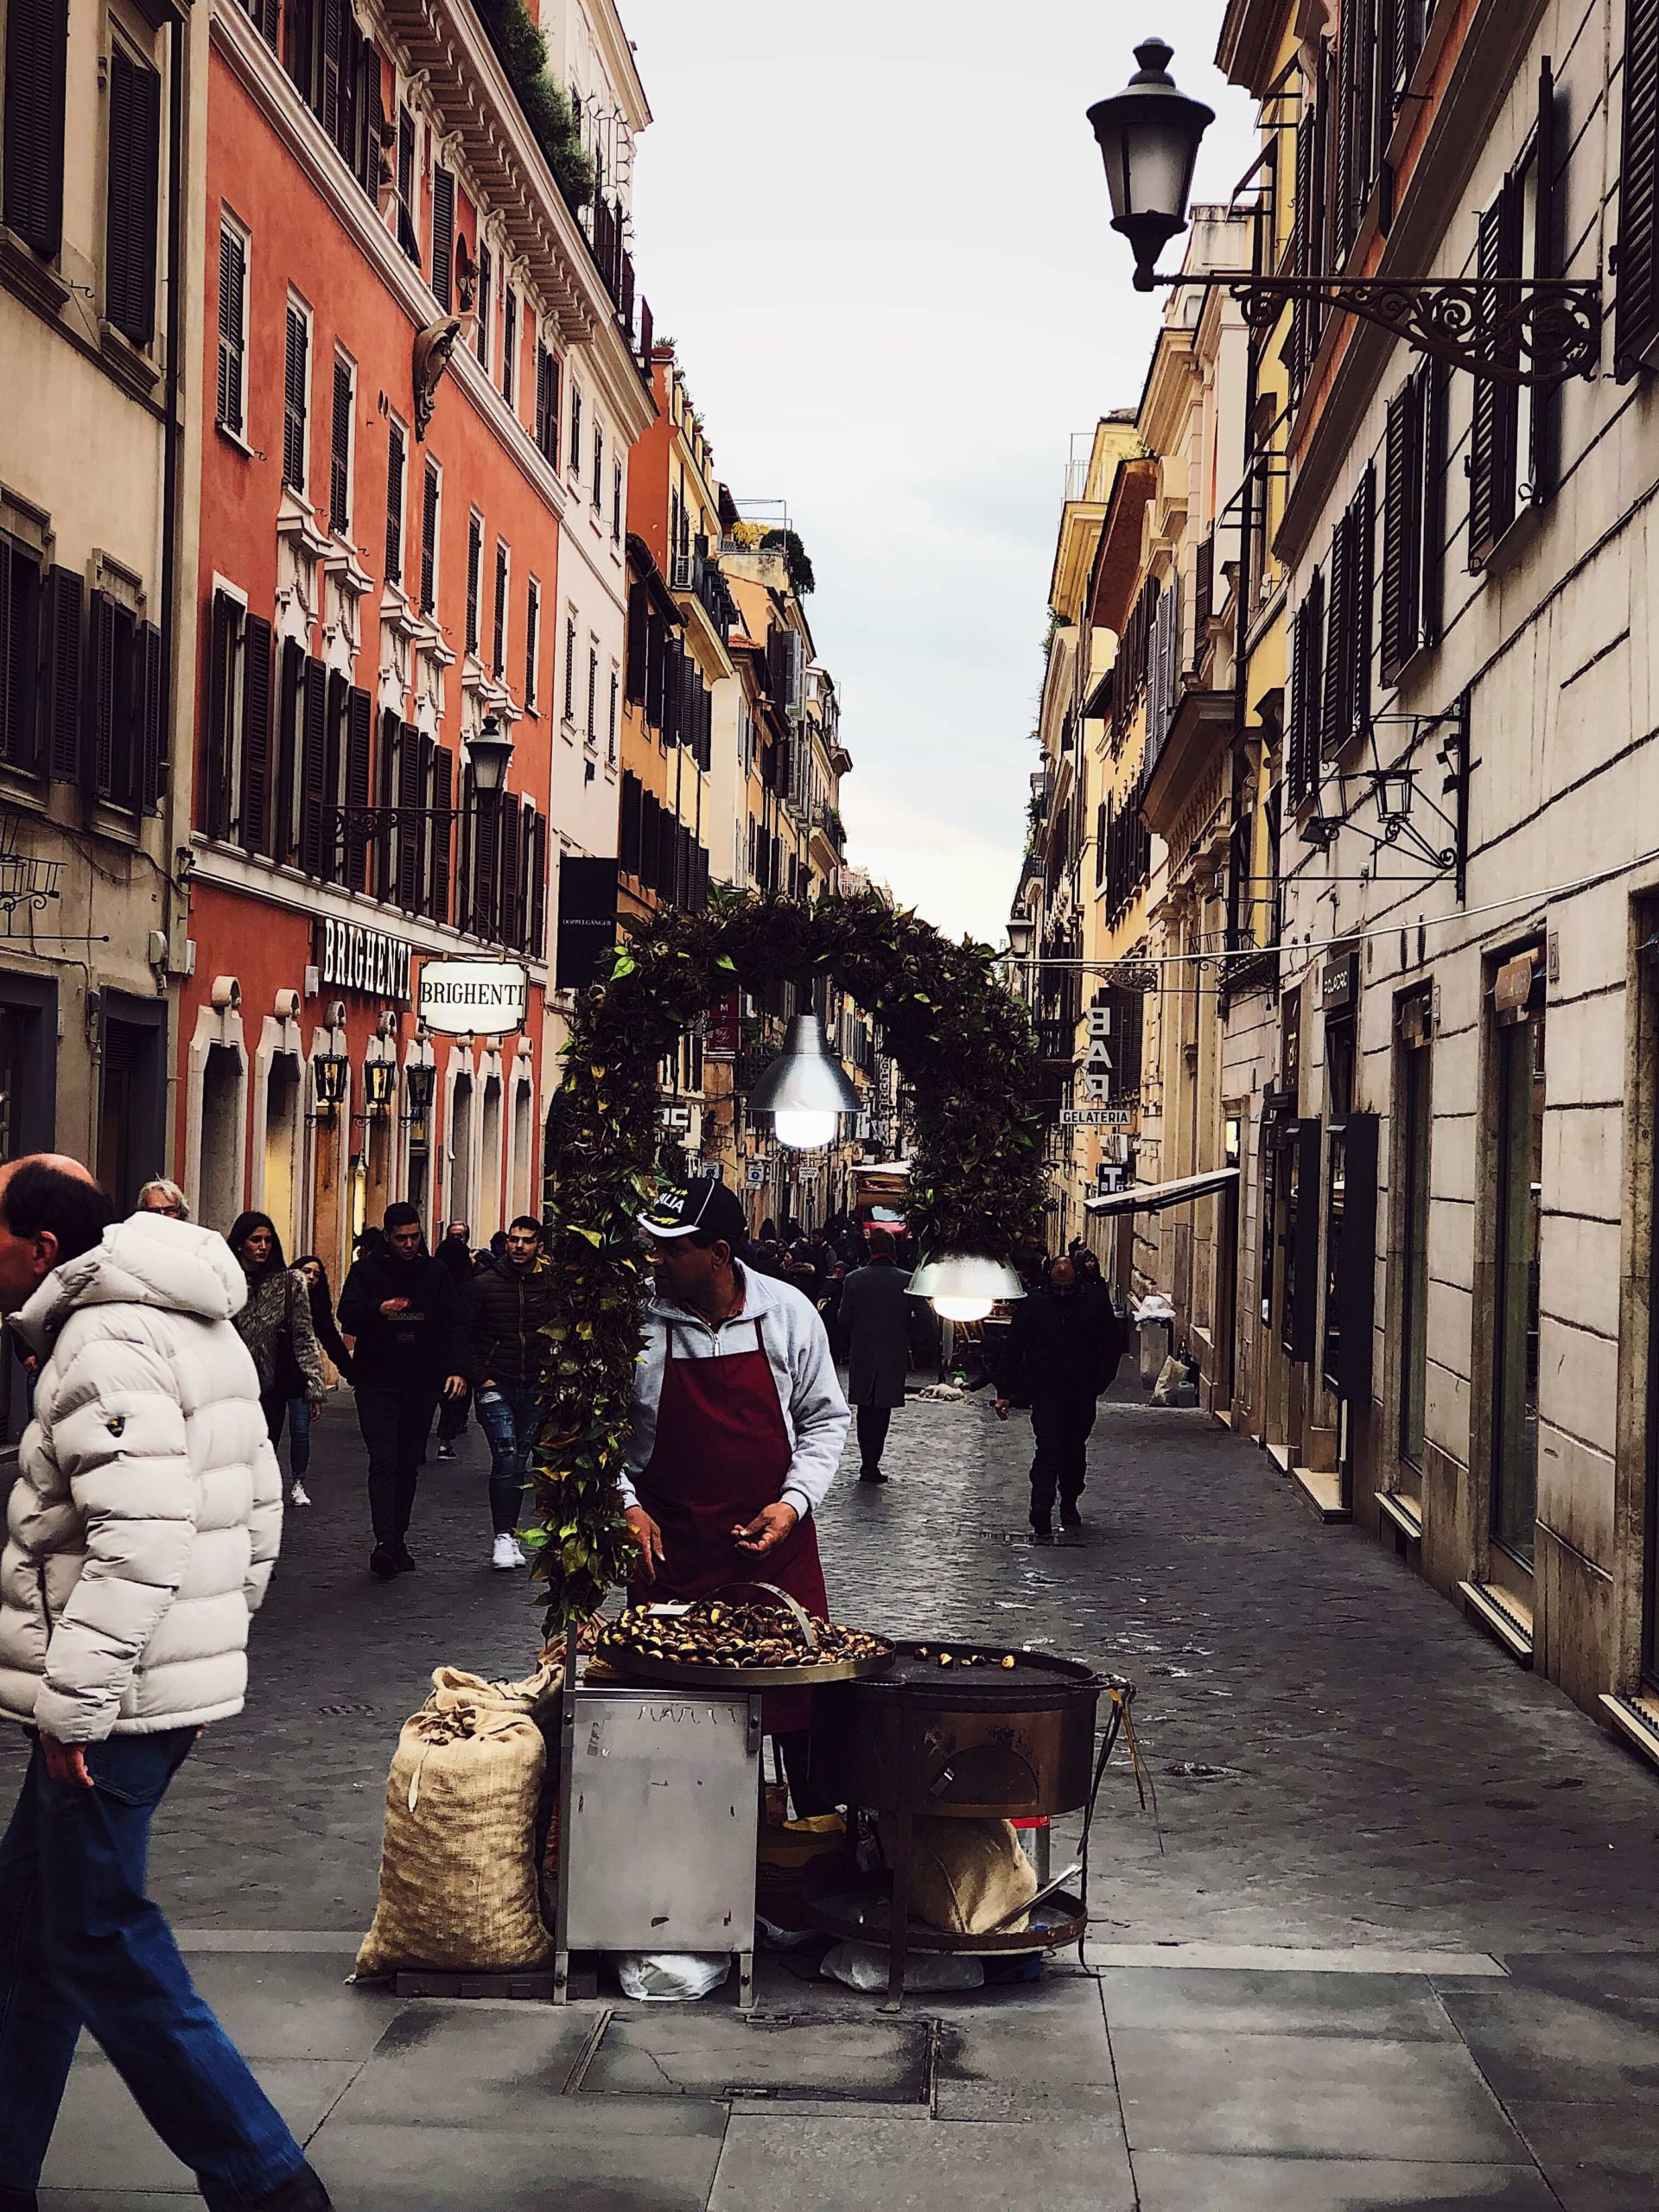 chestnut vendor in Rome